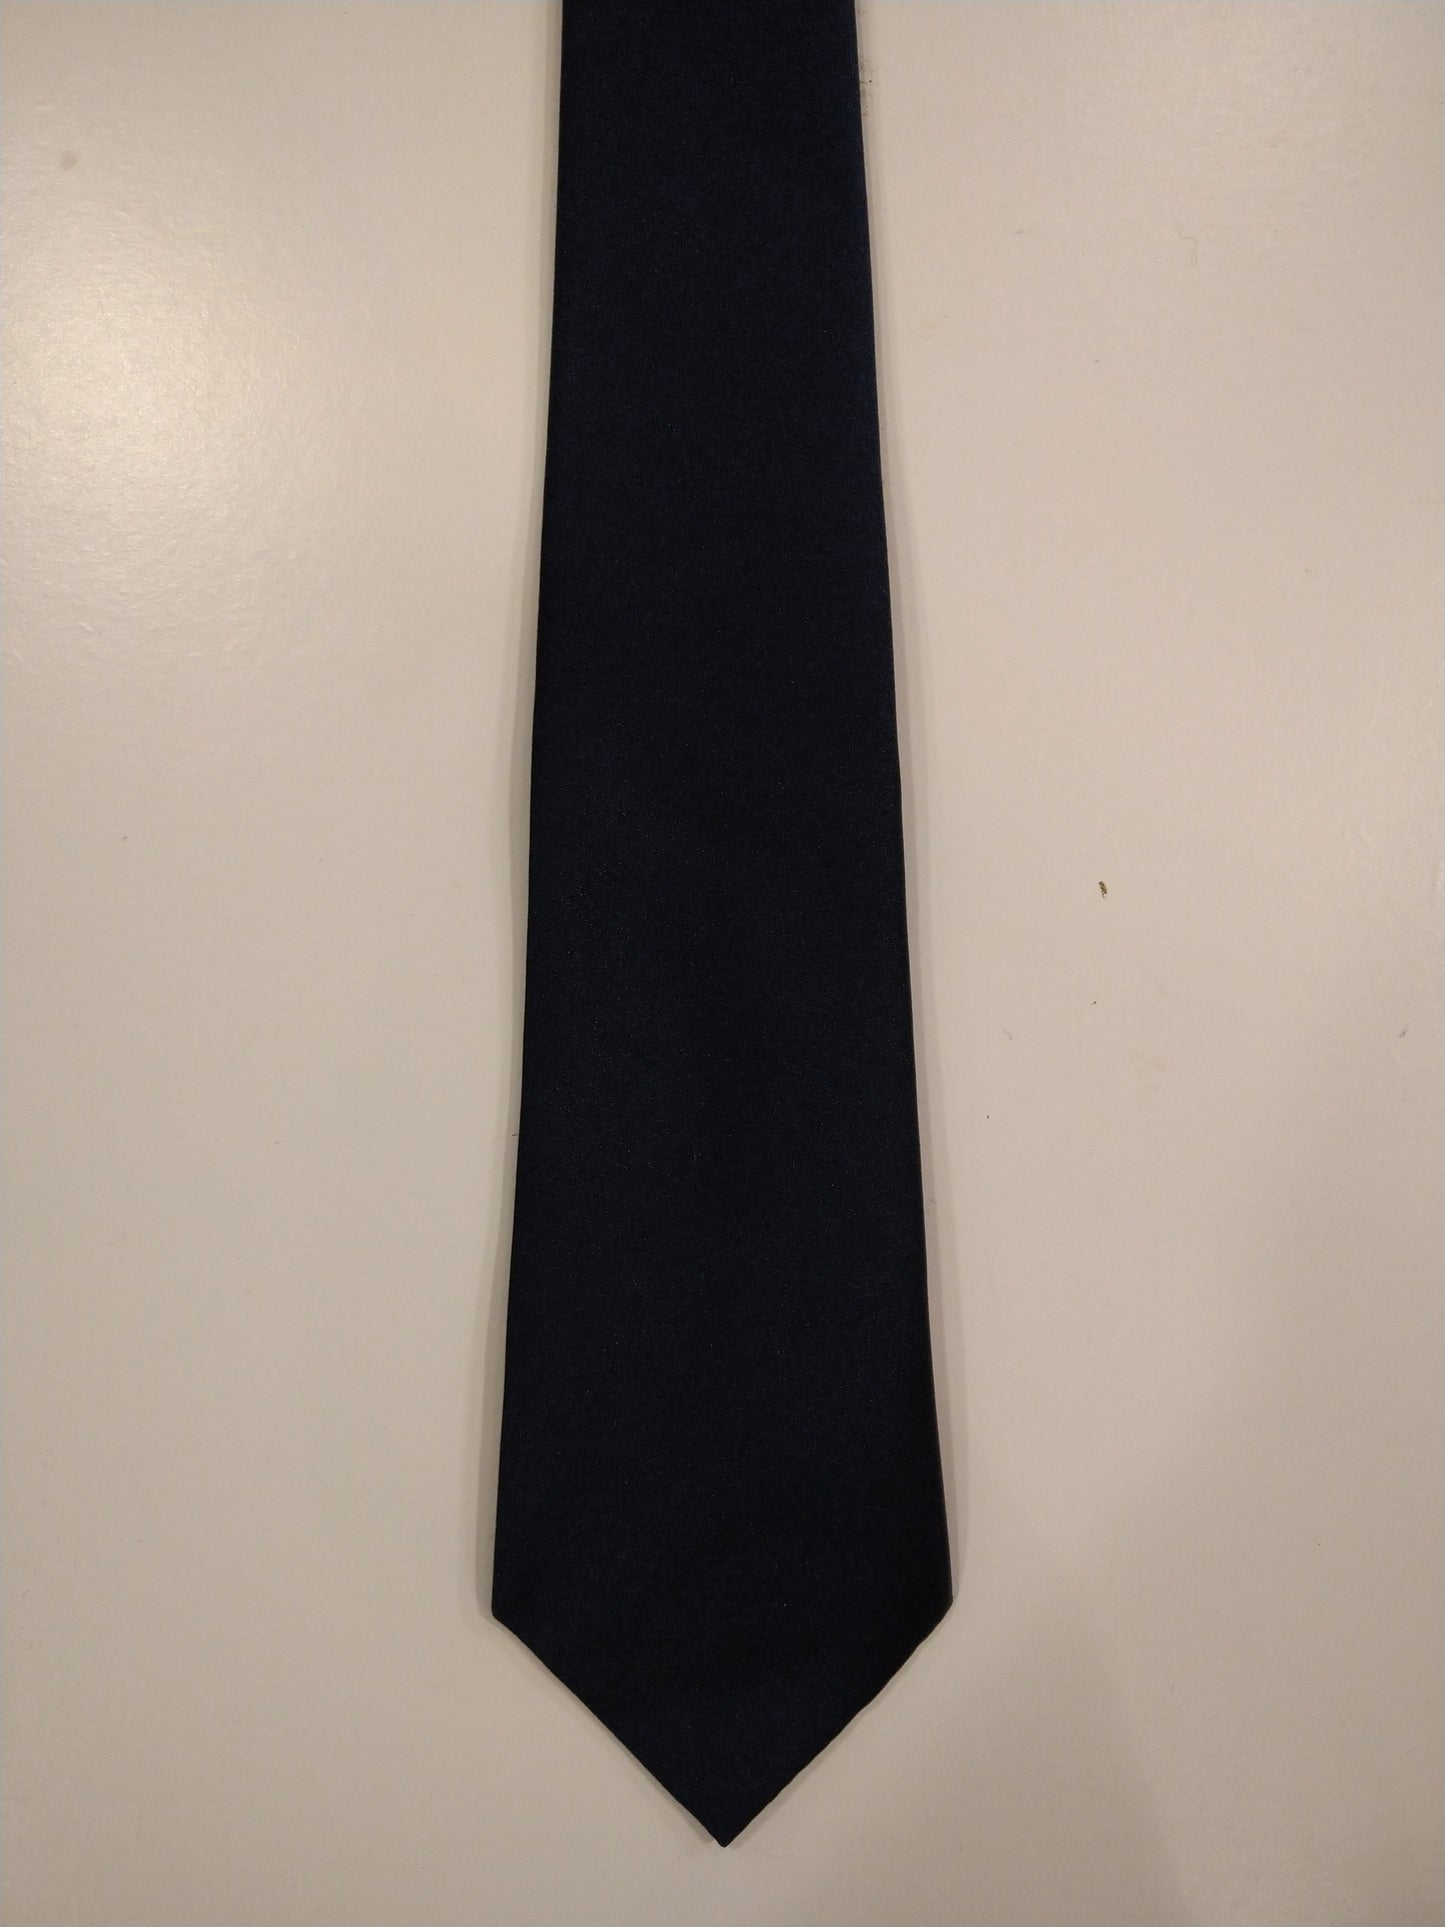 Asdale soft polyester tie. Glossy dark blue.